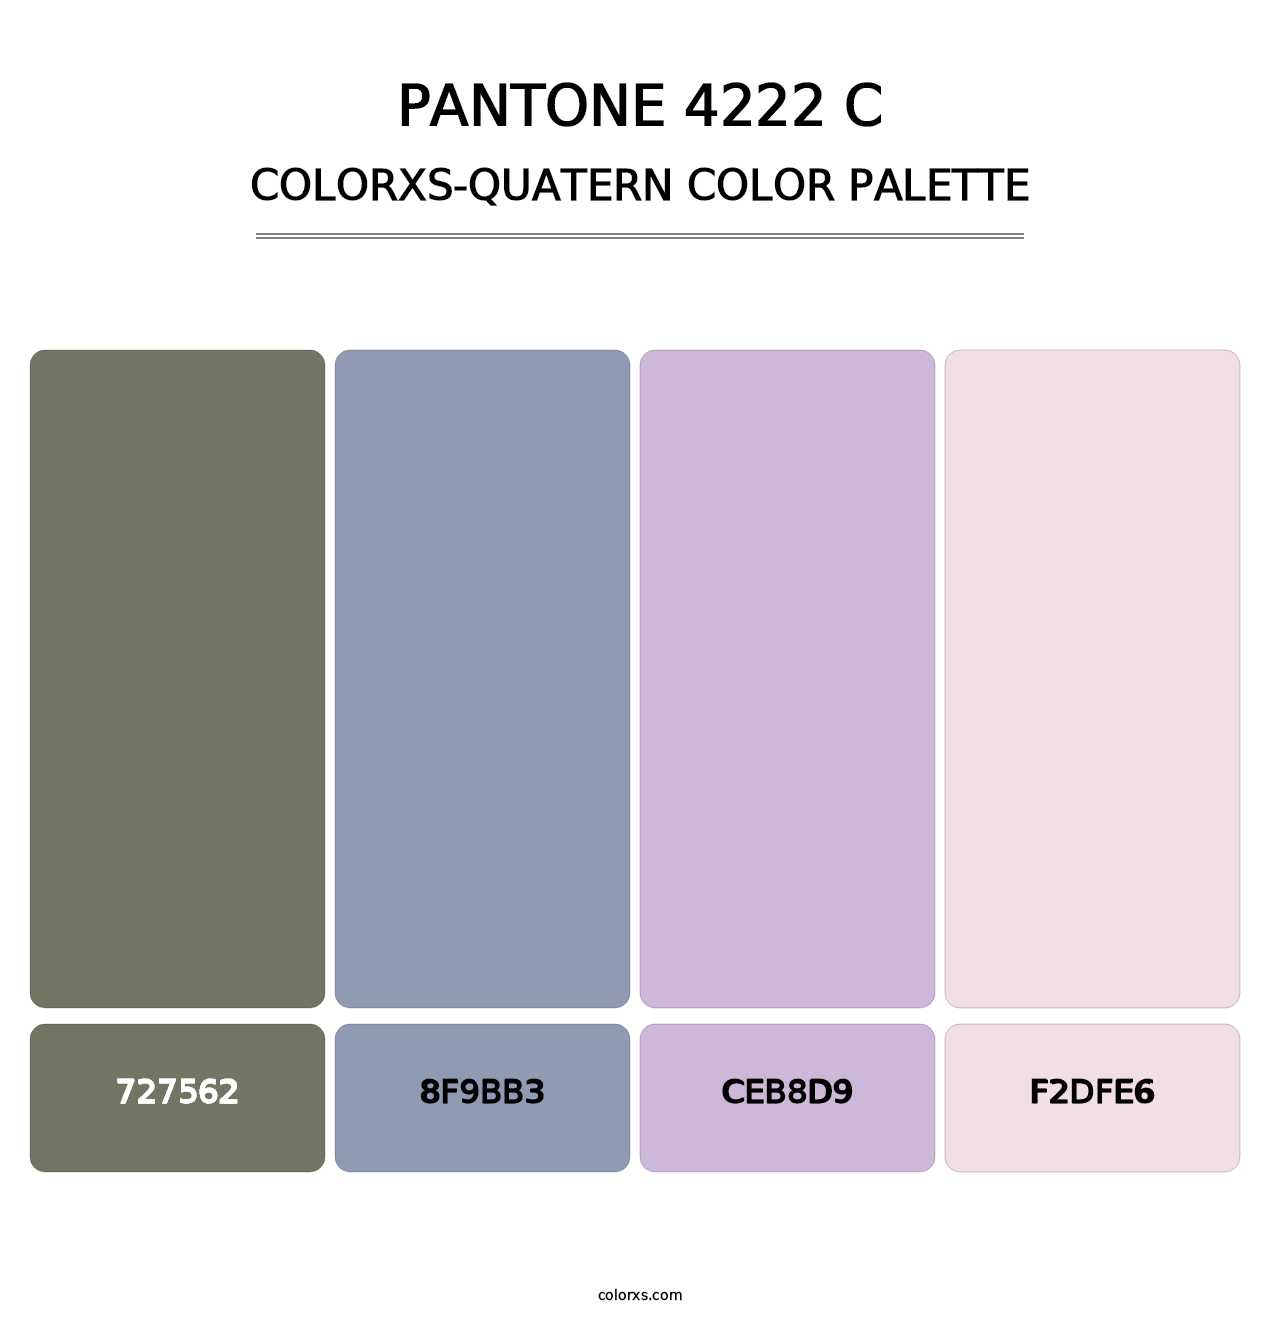 PANTONE 4222 C - Colorxs Quatern Palette